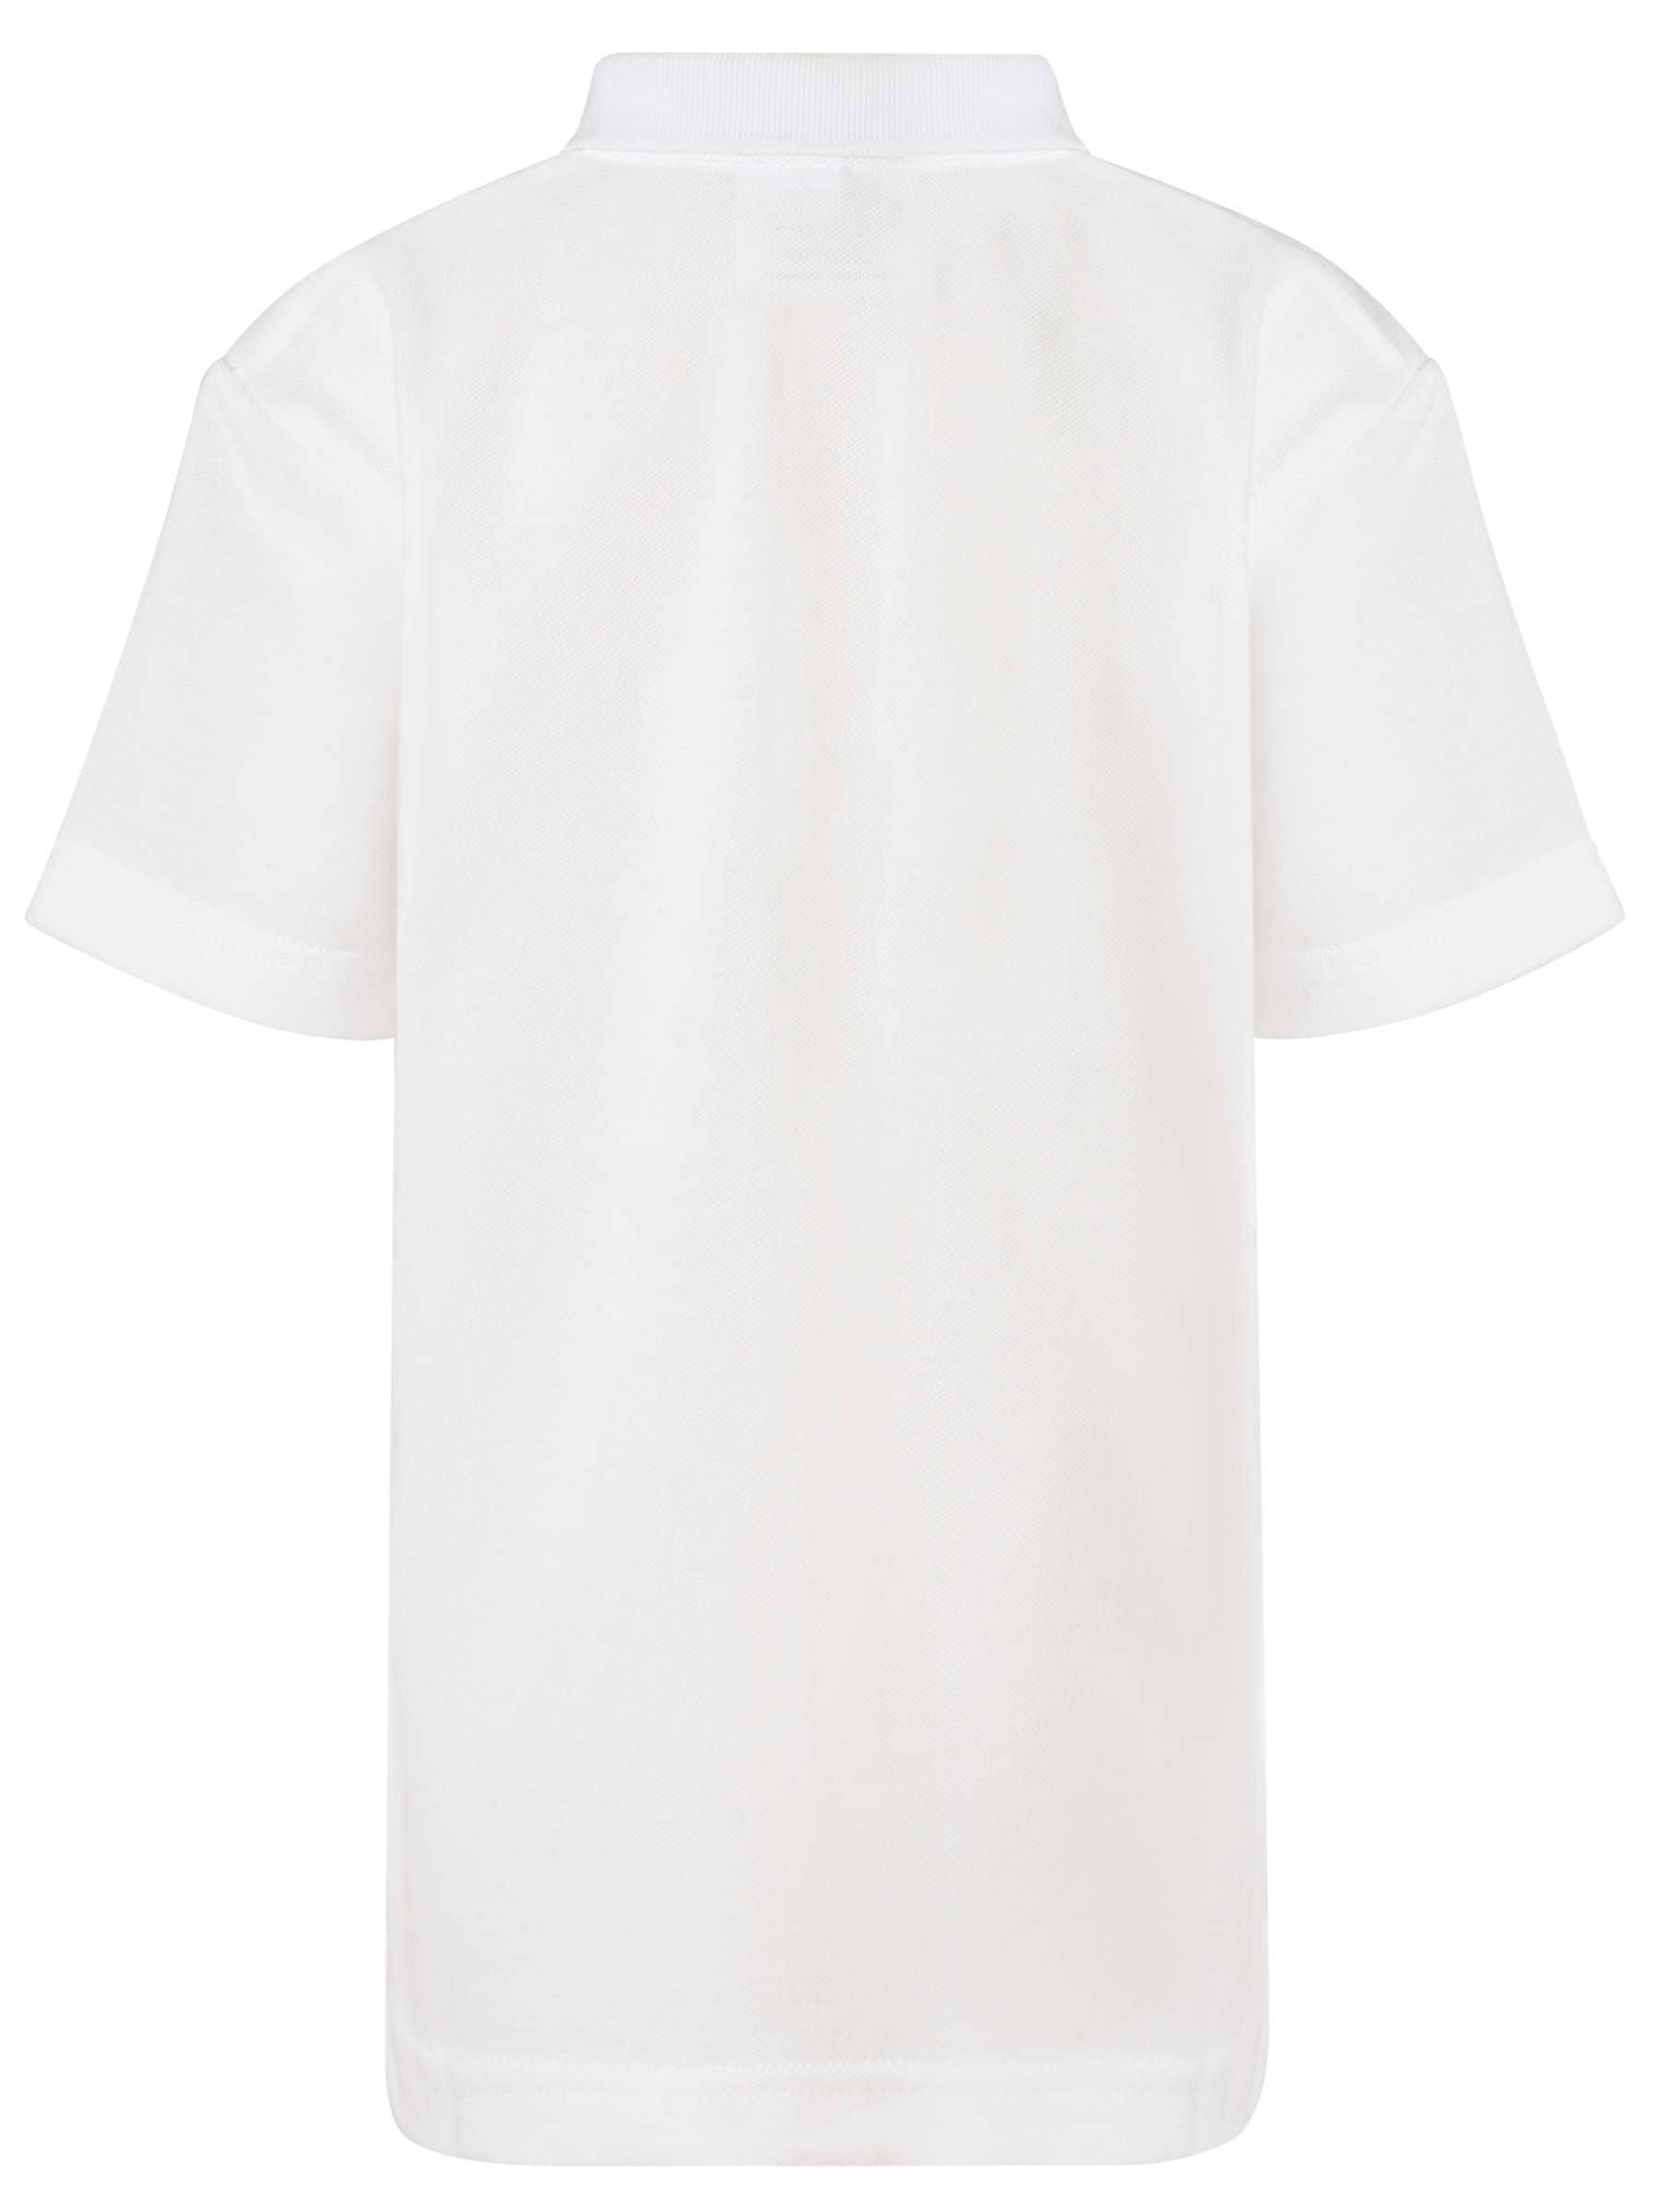 Buy Howell's School Girls' Sport Polo Shirt, White Online at johnlewis.com